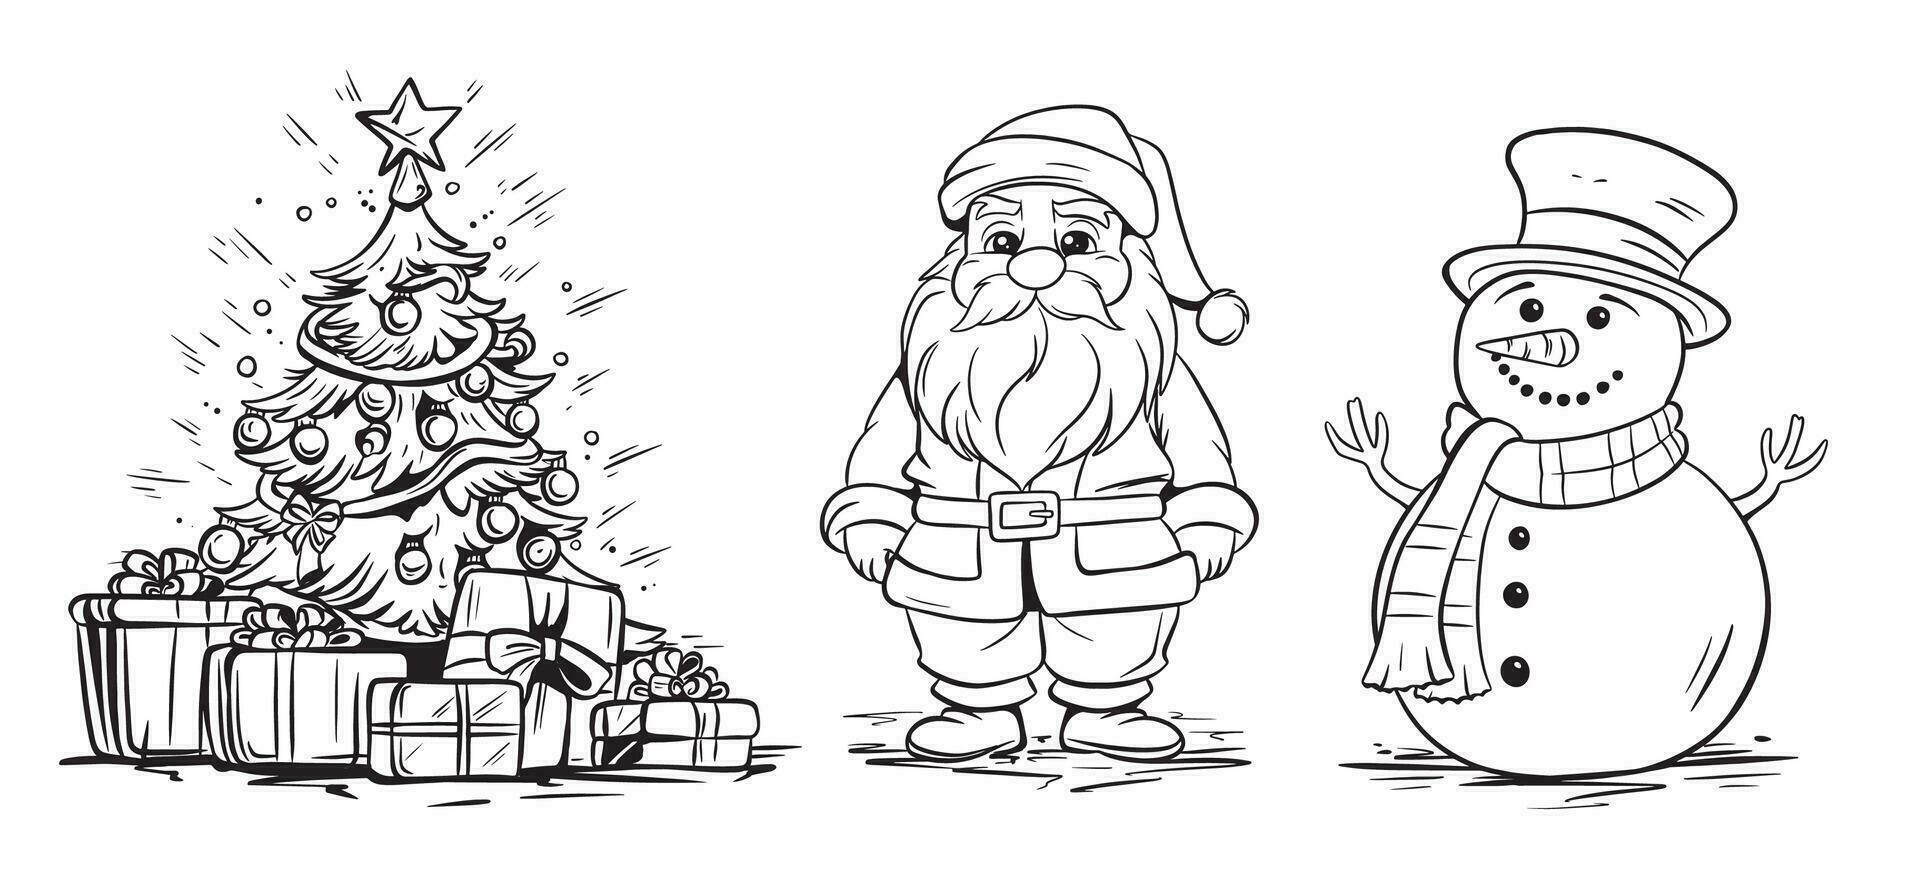 impostato di nuovo anno elementi e personaggi. Natale albero con i regali, babbo natale, pupazzo di neve. vettore